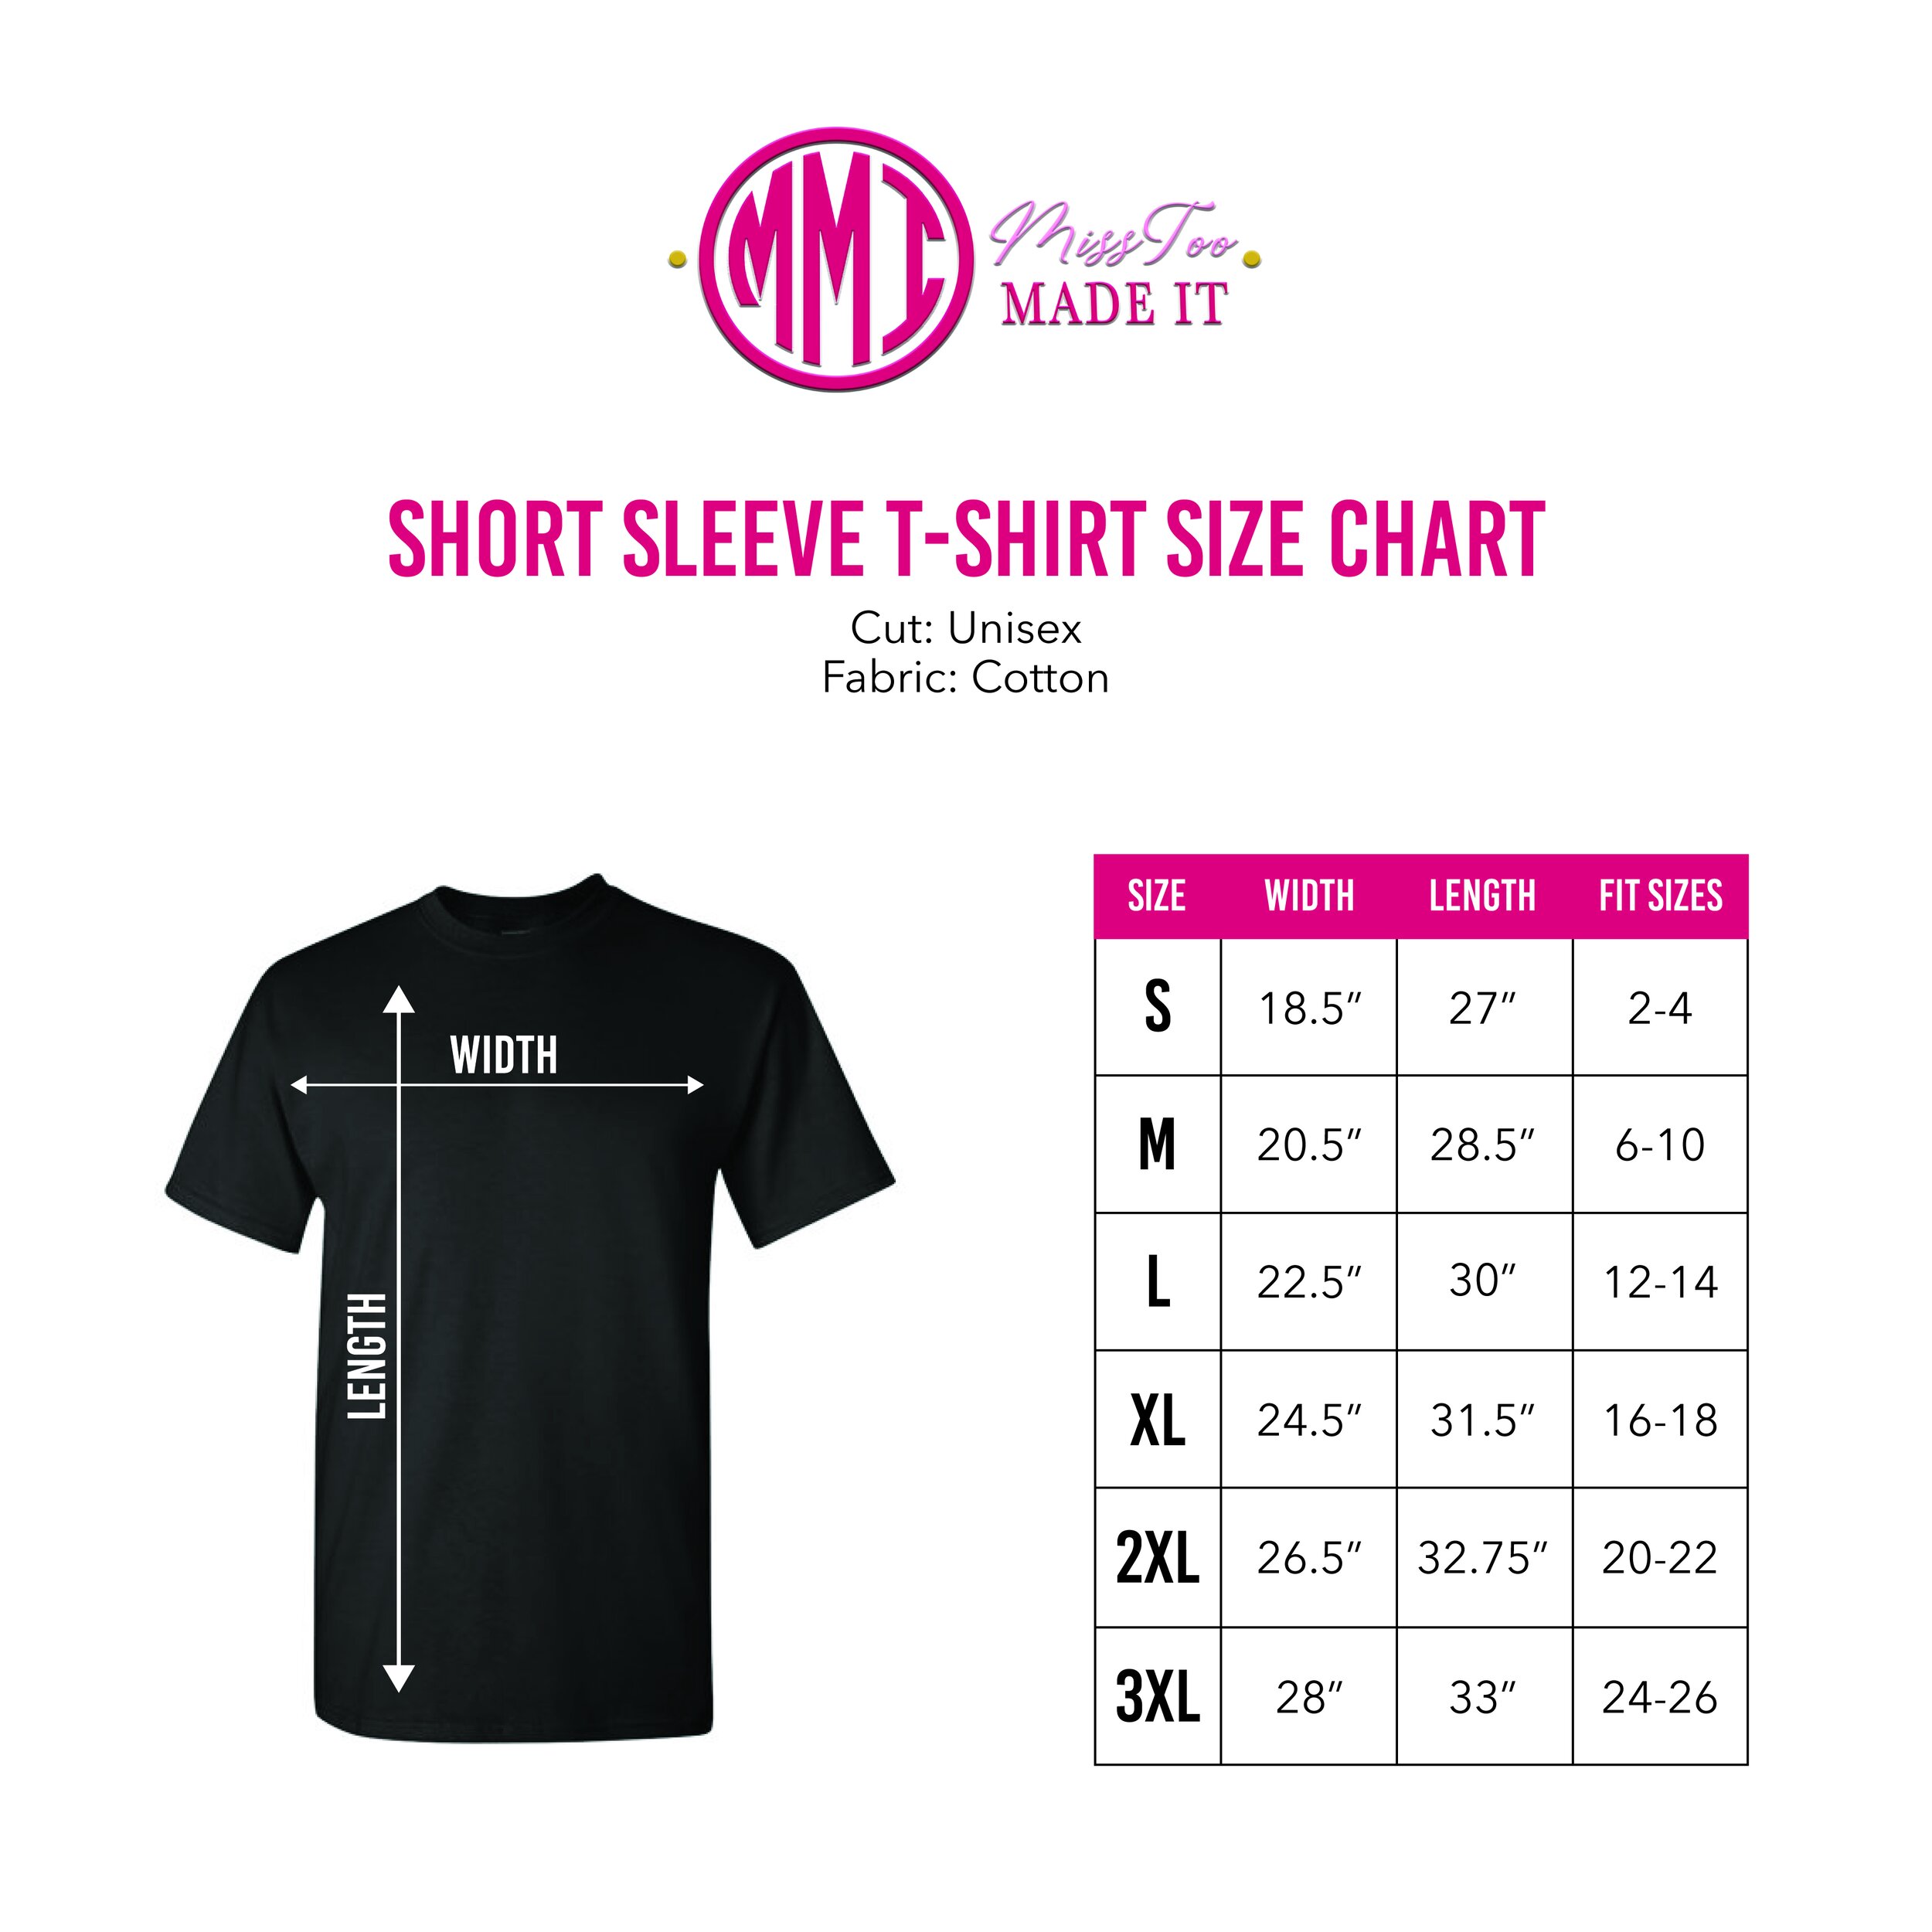 MissToo_Size Chart_Short Sle.jpg